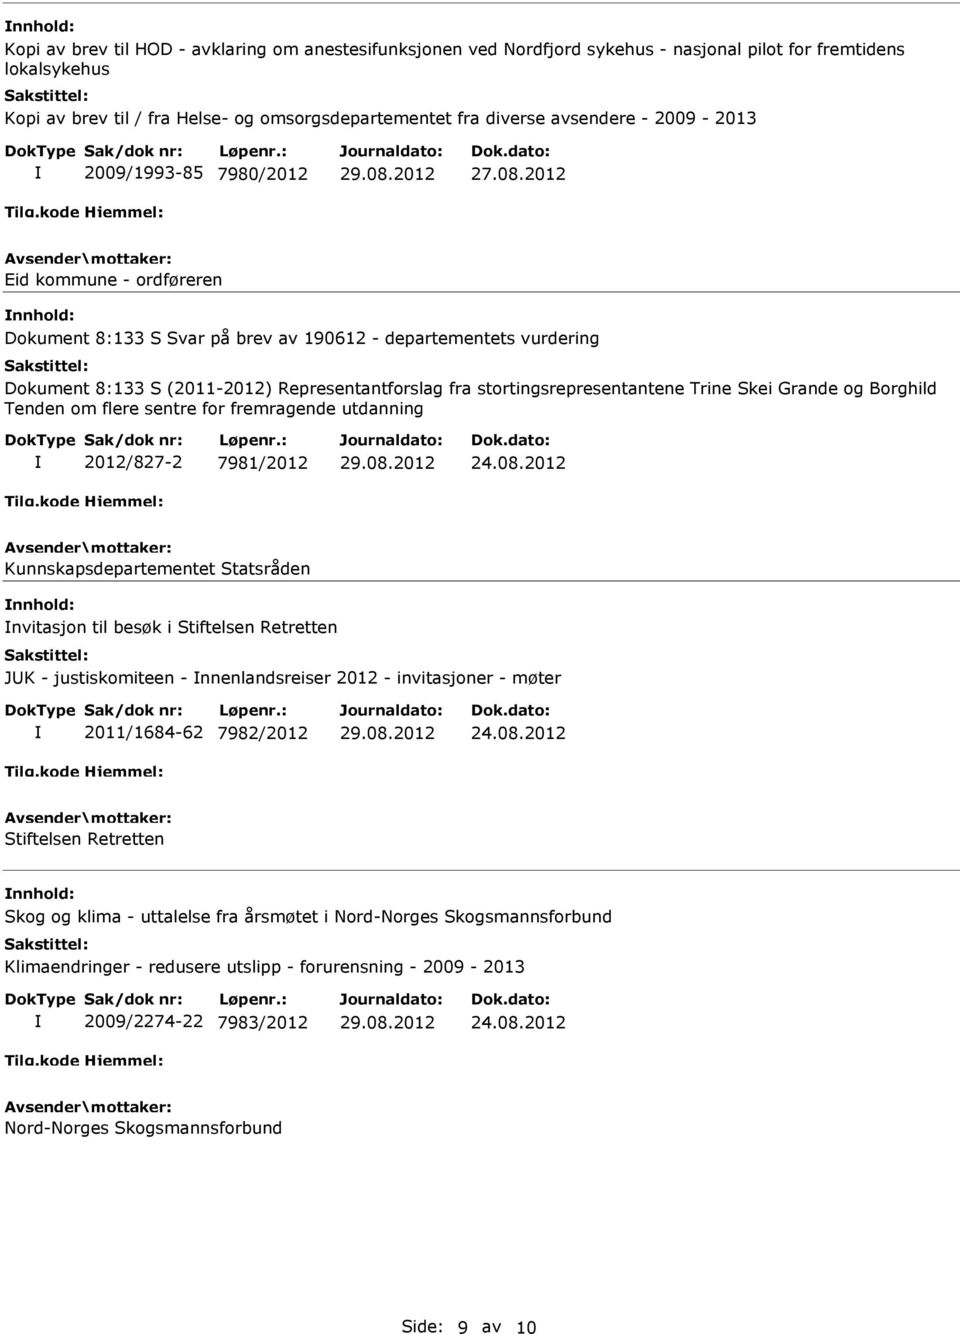 2012 Eid kommune - ordføreren Dokument 8:133 S Svar på brev av 190612 - departementets vurdering Dokument 8:133 S (2011-2012) Representantforslag fra stortingsrepresentantene Trine Skei Grande og